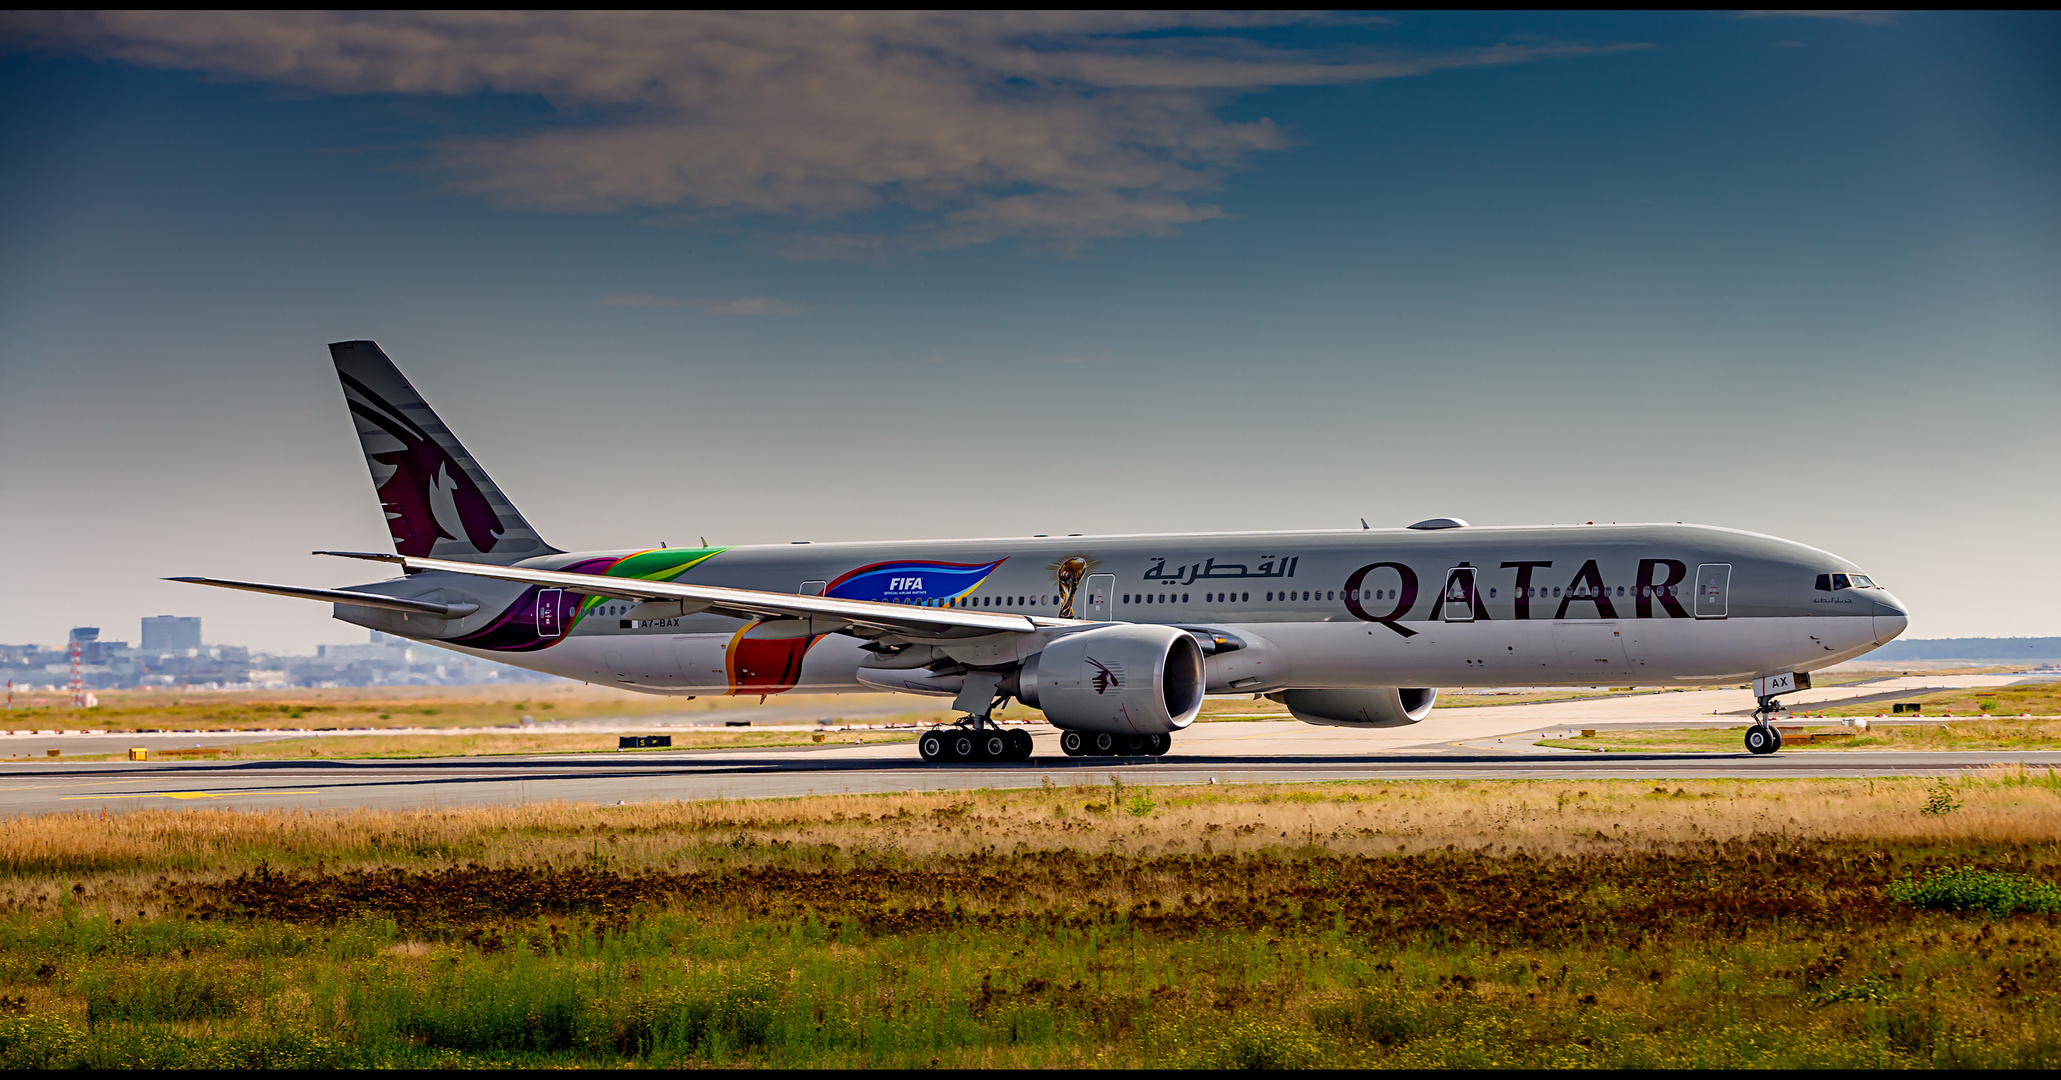 Qatar Airways (FIFA World Cup 2022 Livery), Boeing 777-3DZ(ER)